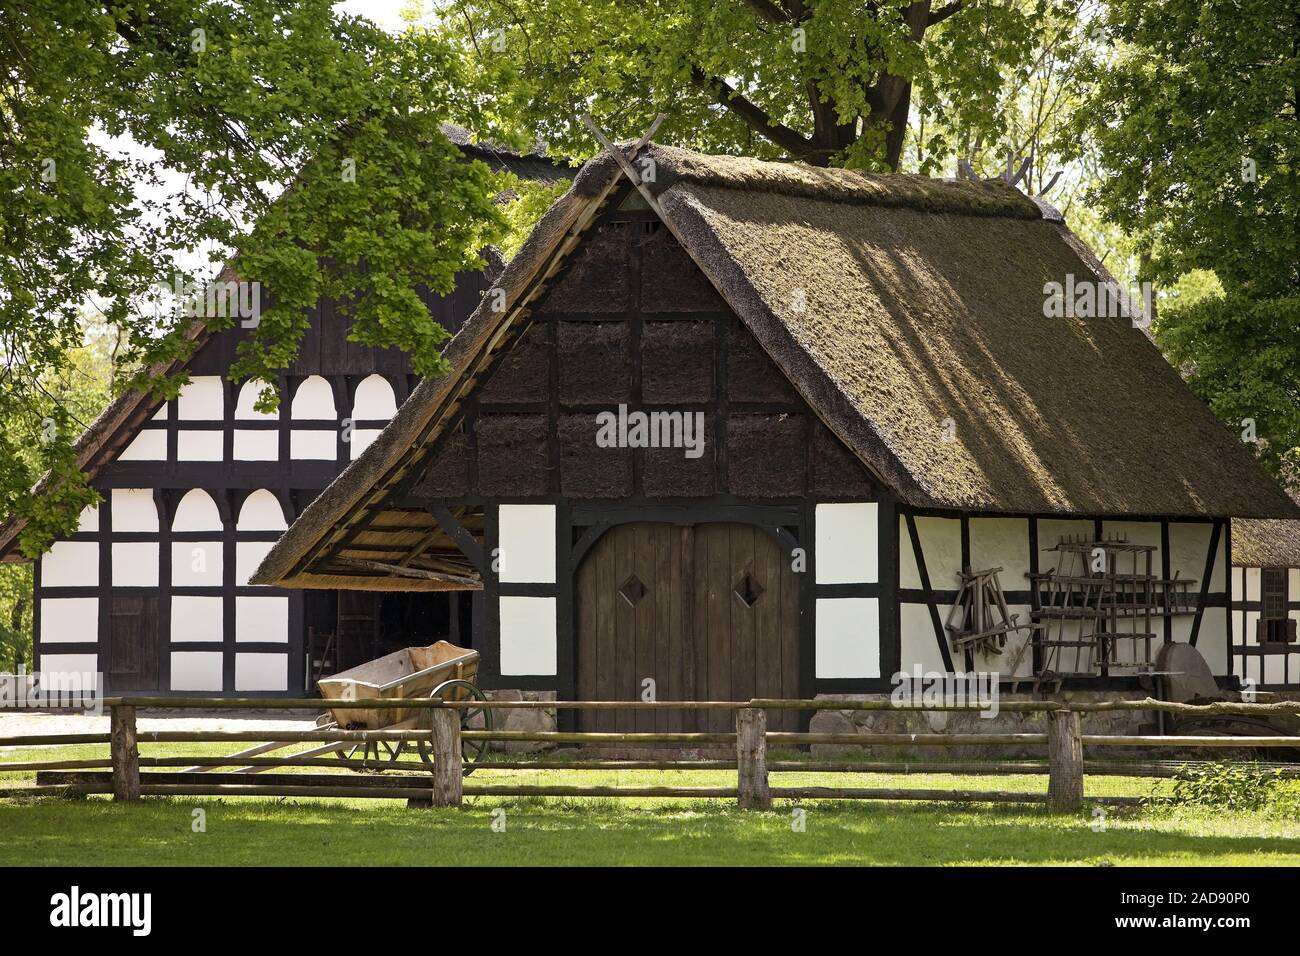 Musei Hof, gli agricoltori Homestead, museo all'aria aperta, Rhaden, Renania settentrionale-Vestfalia, Germania, Europa Foto Stock